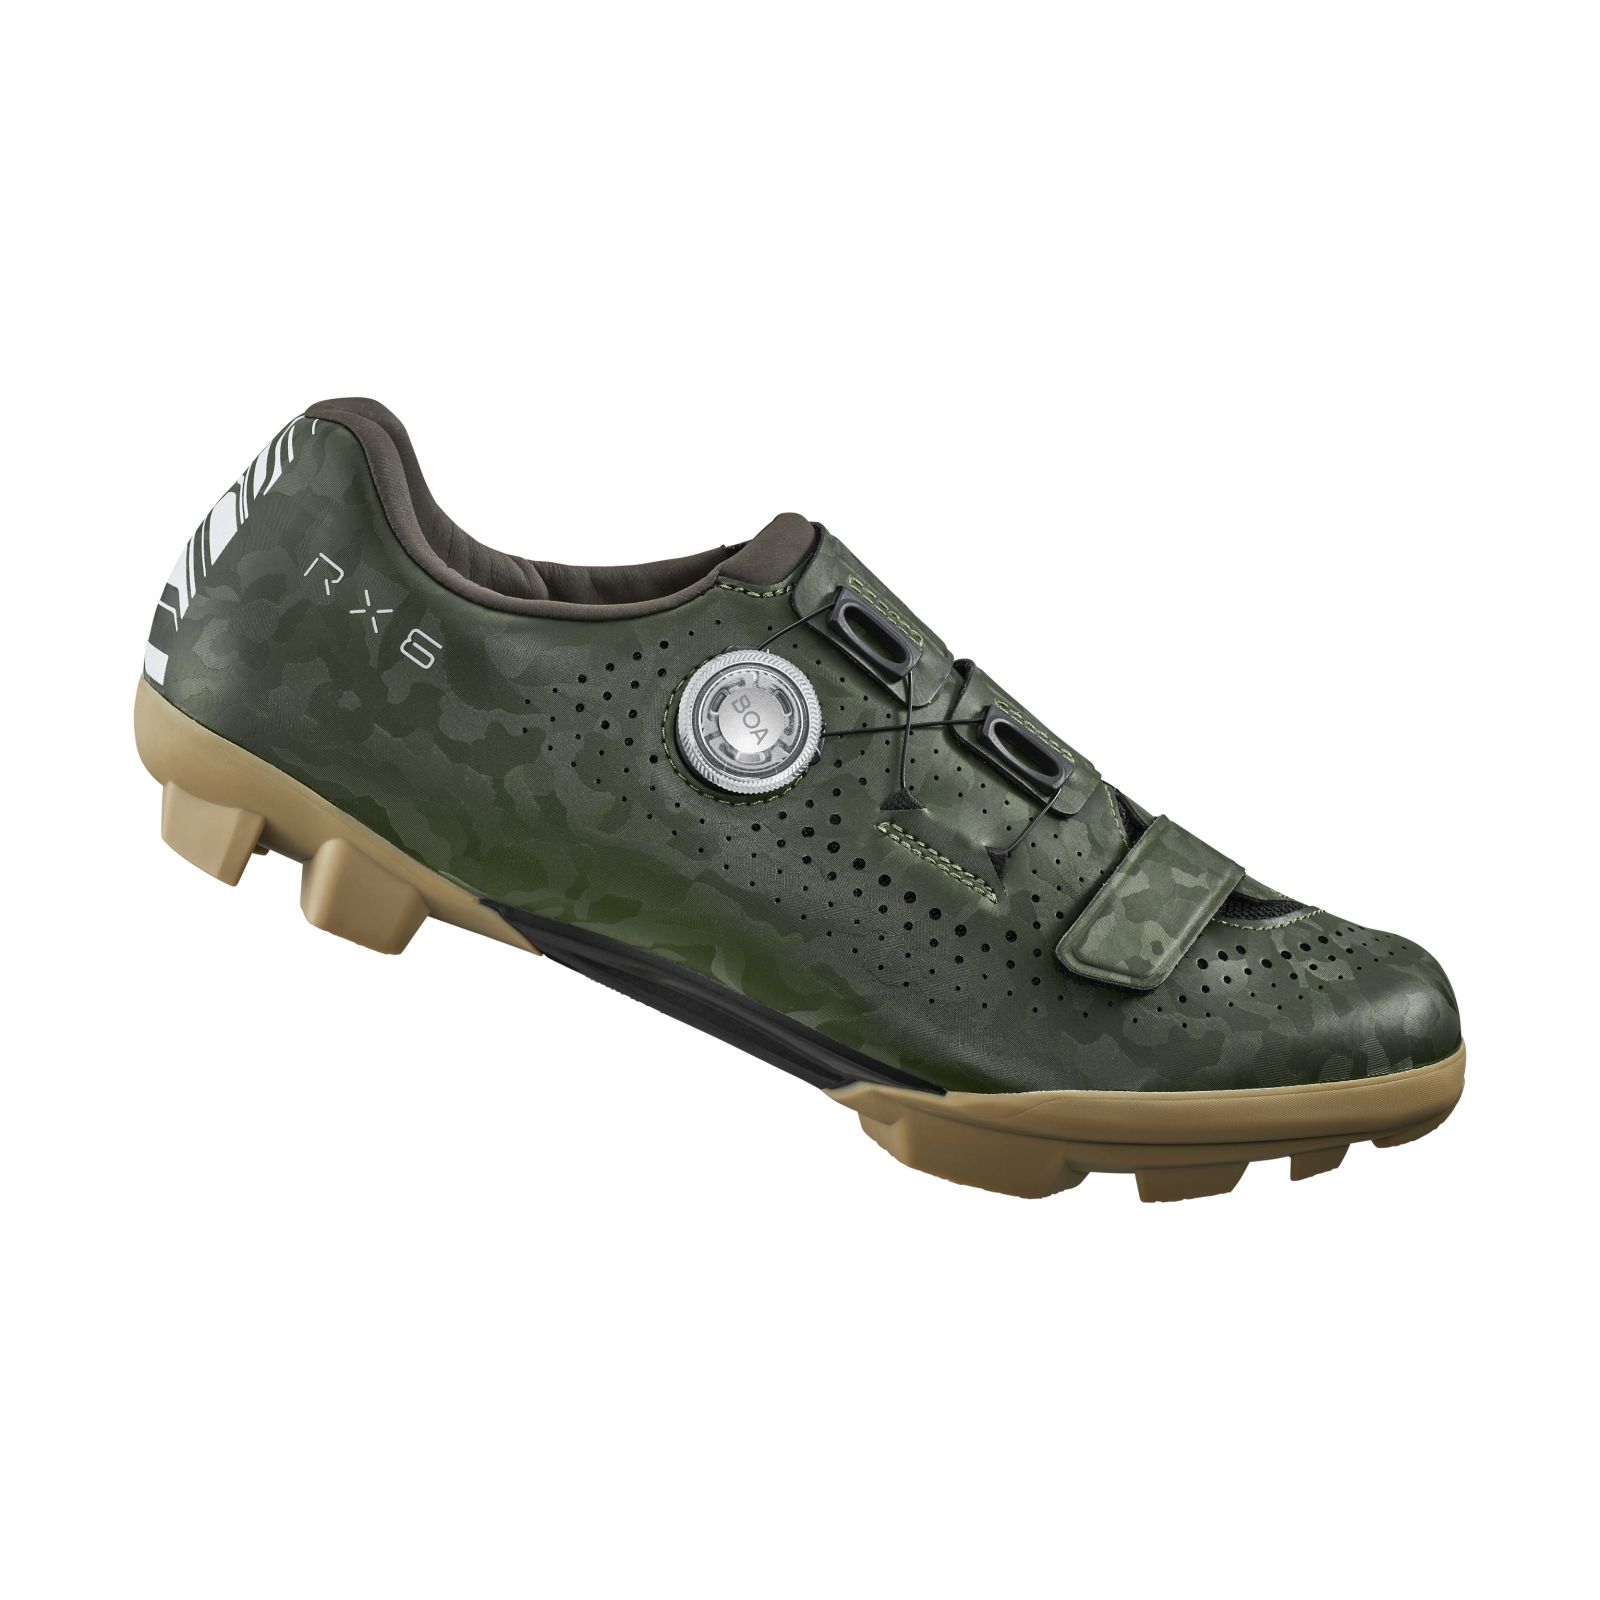 SHIMANO gravel obuv SH-RX600, pánská, zelená, 44, WIDE